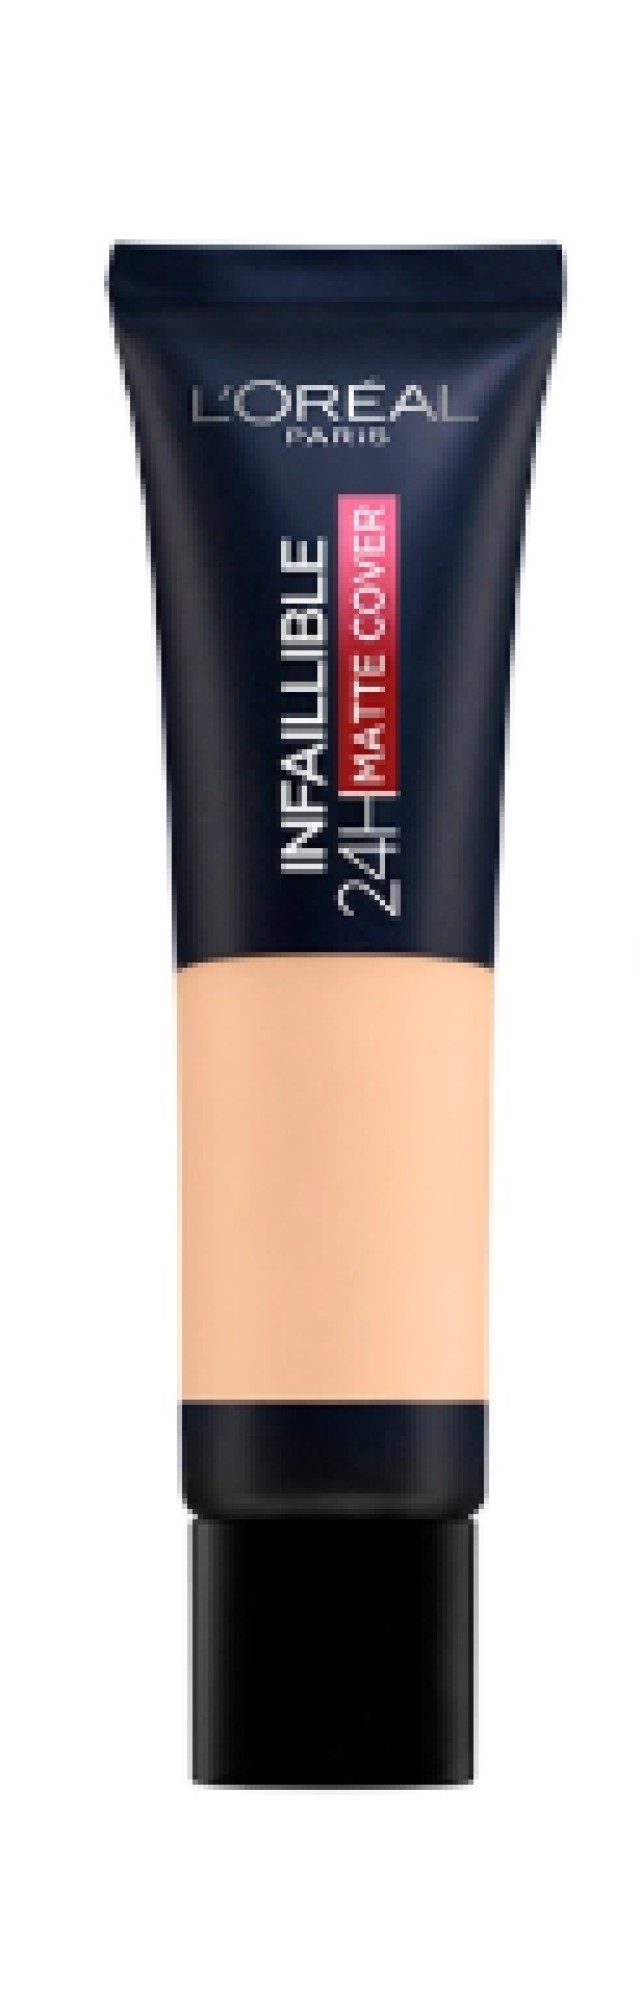 L'Oreal Paris Infaillible 24h Matte Cover Υγρό Make Up 130 Beige Peau 30ml